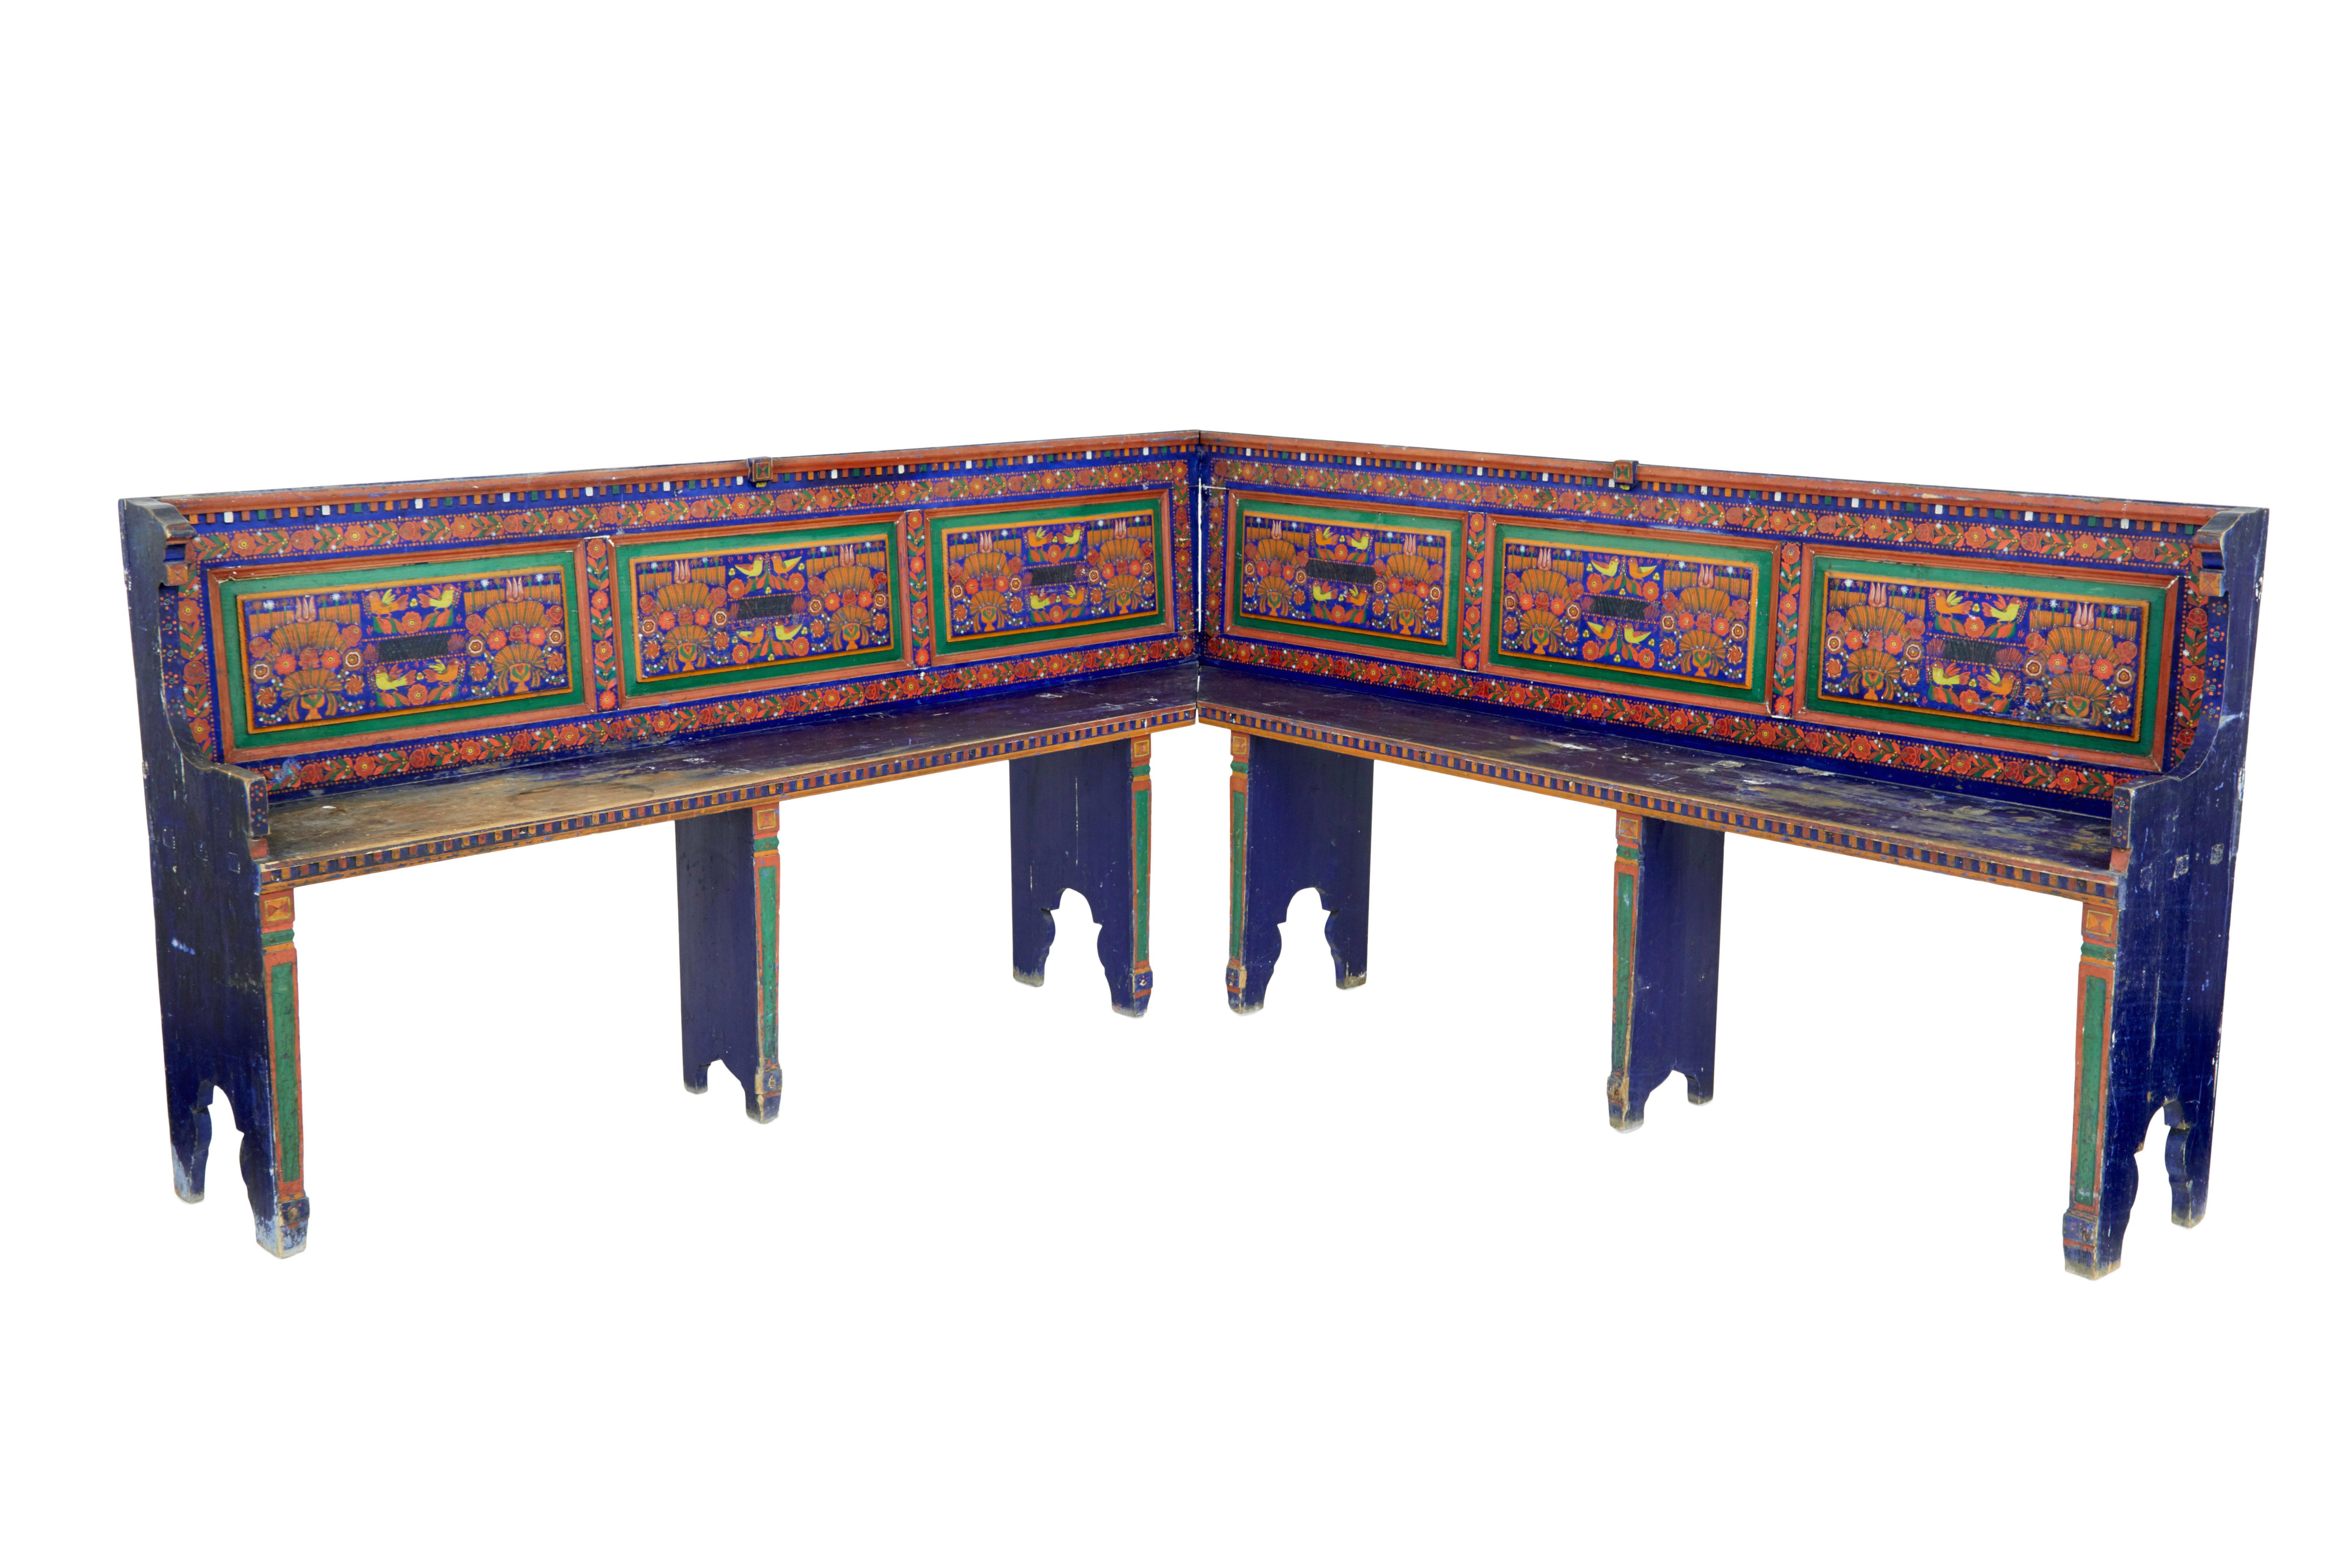 Siège d'angle d'art populaire peint à la main au 19e siècle, vers 1880.

Nous avons le plaisir de vous proposer ce rare meuble traditionnel hongrois, peint à la main en bleu/vert et rouge.

2 bancs s'emboîtent pour former un banc à 90 degrés.  Les